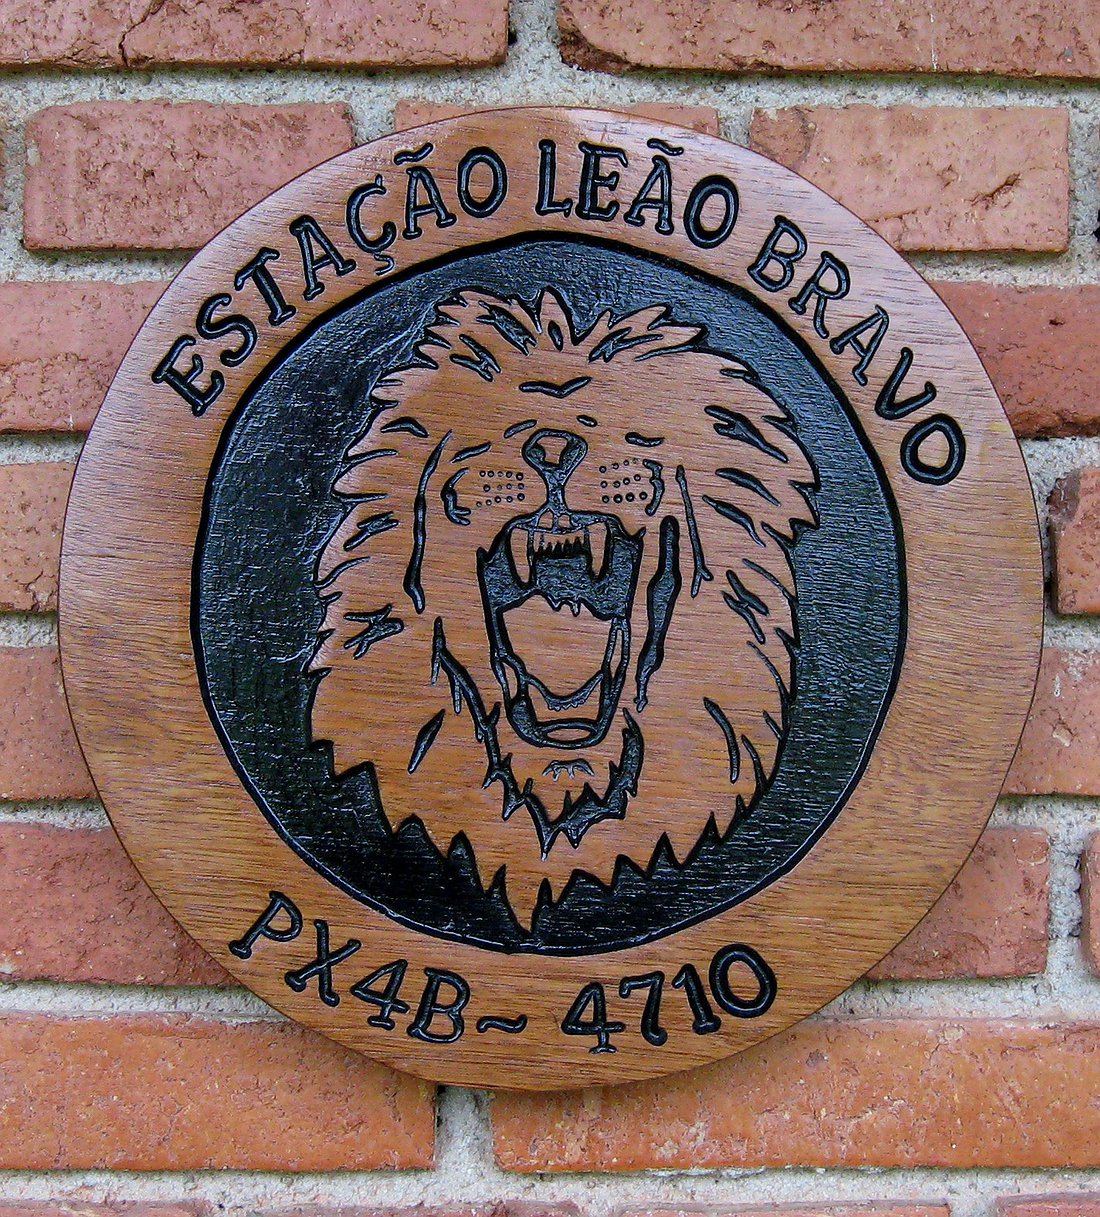 Estação Leão Bravo